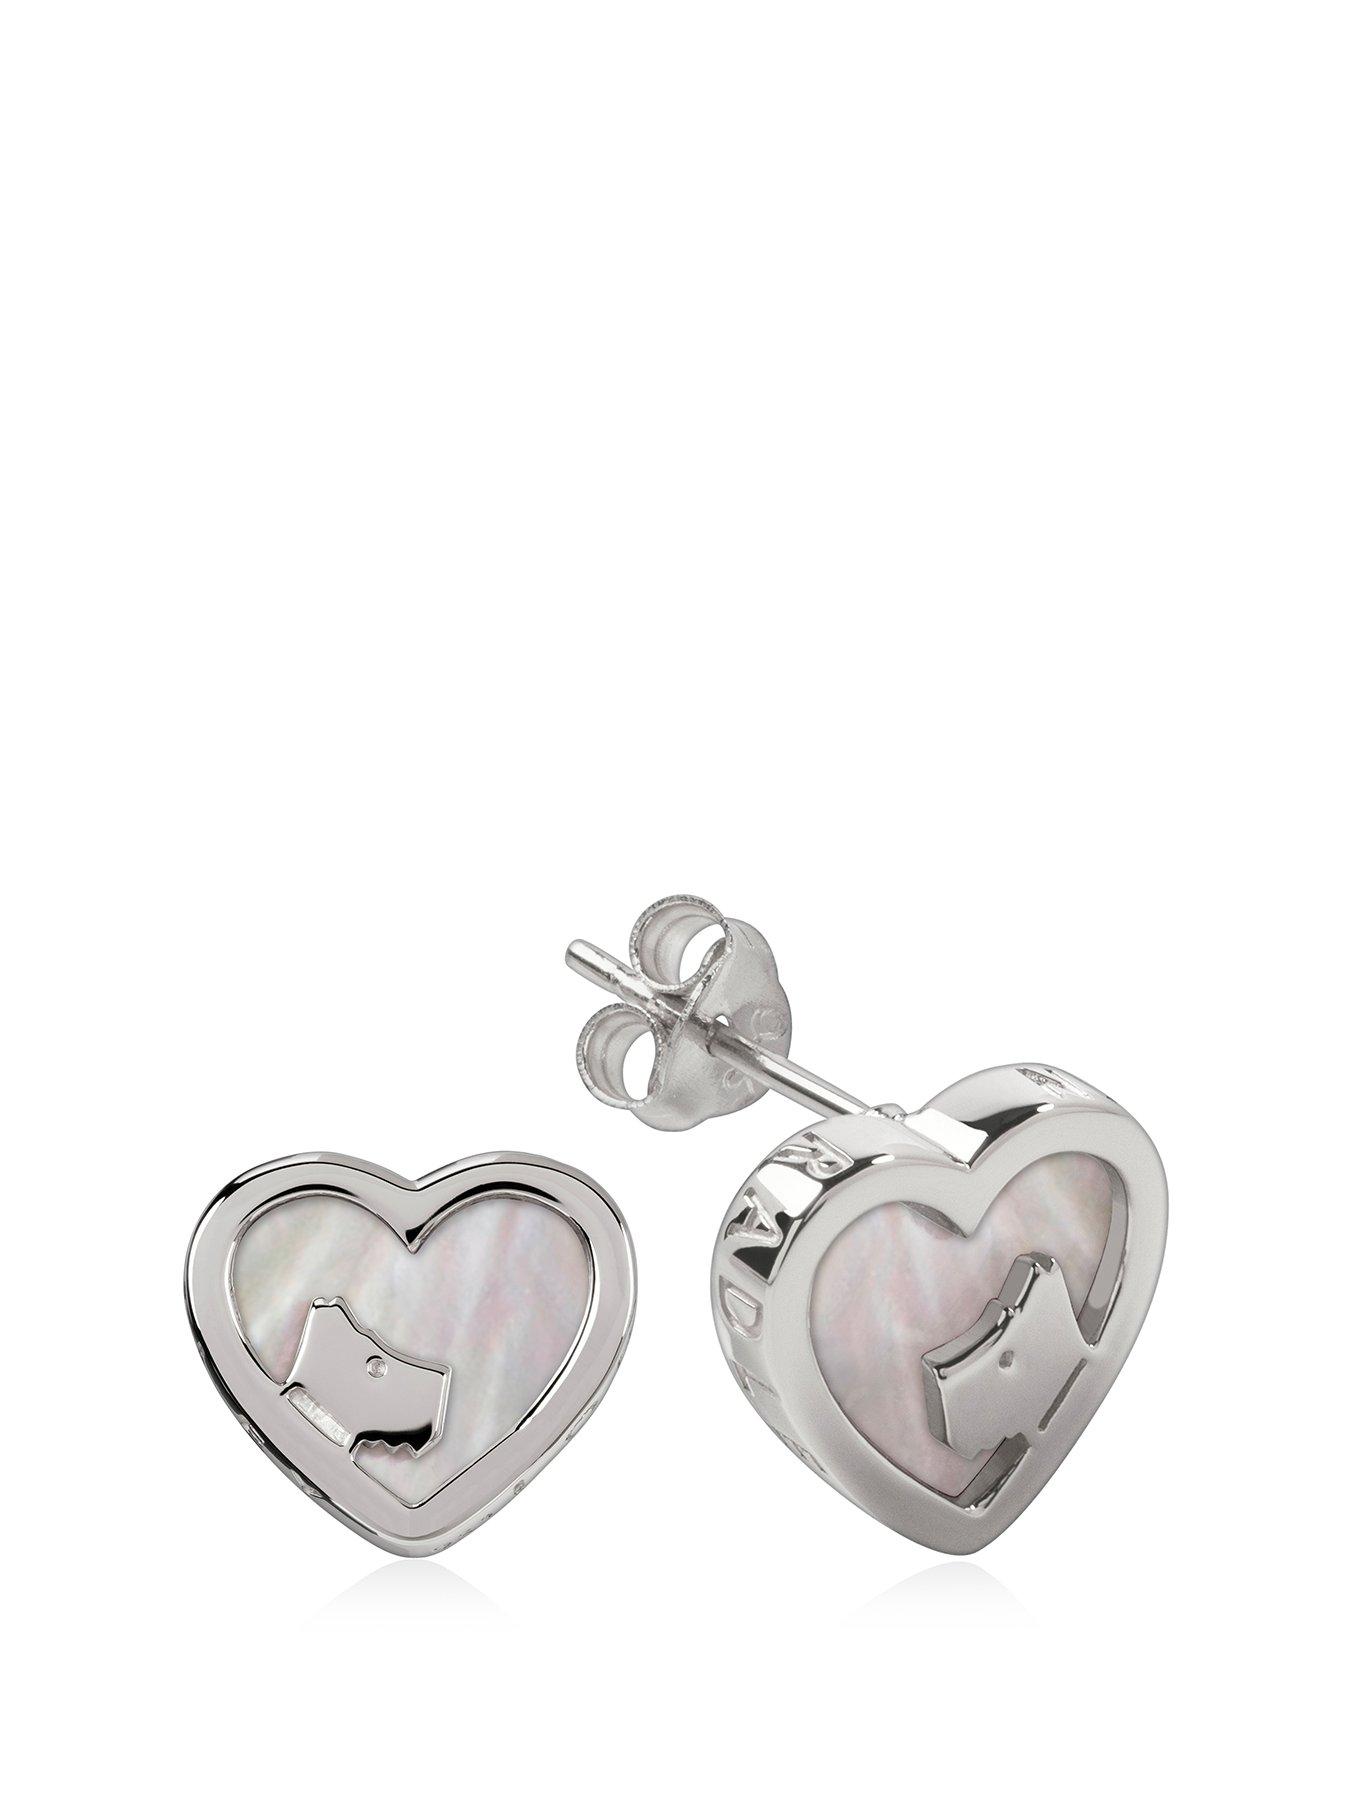  Love Radley Sterling Silver Heart Earrings